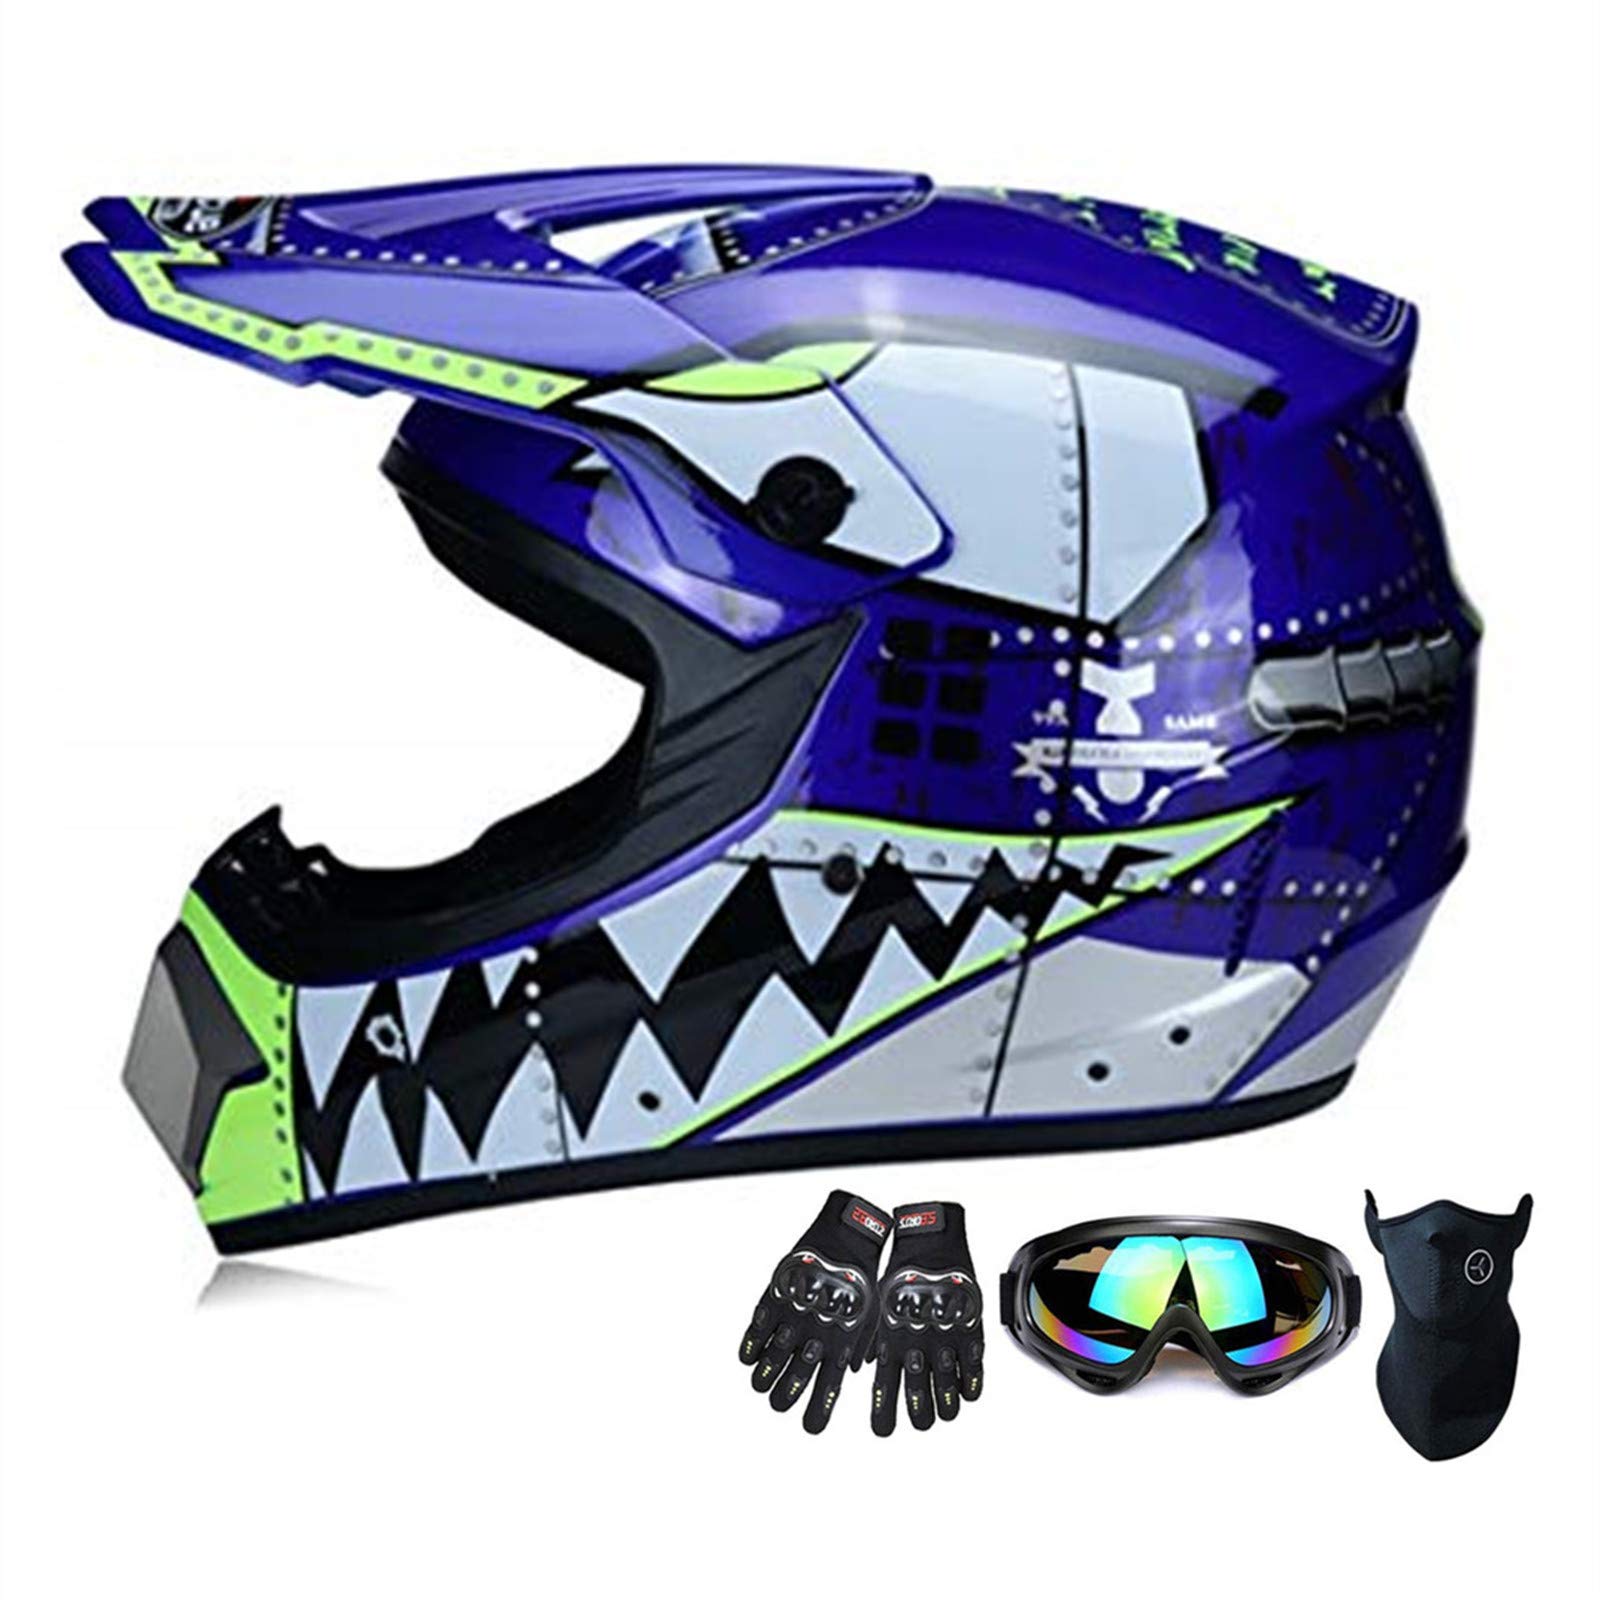 Motocross Helm ATV Motorrad-Sturzhelm SUV Maske + Goggles + Handschuhe, Personality Haifisch-Zähne Dirt Bike Downhill Off-Road Mountainbike Helm 4-teiliges Set Unisex,Blau,M von SanQing